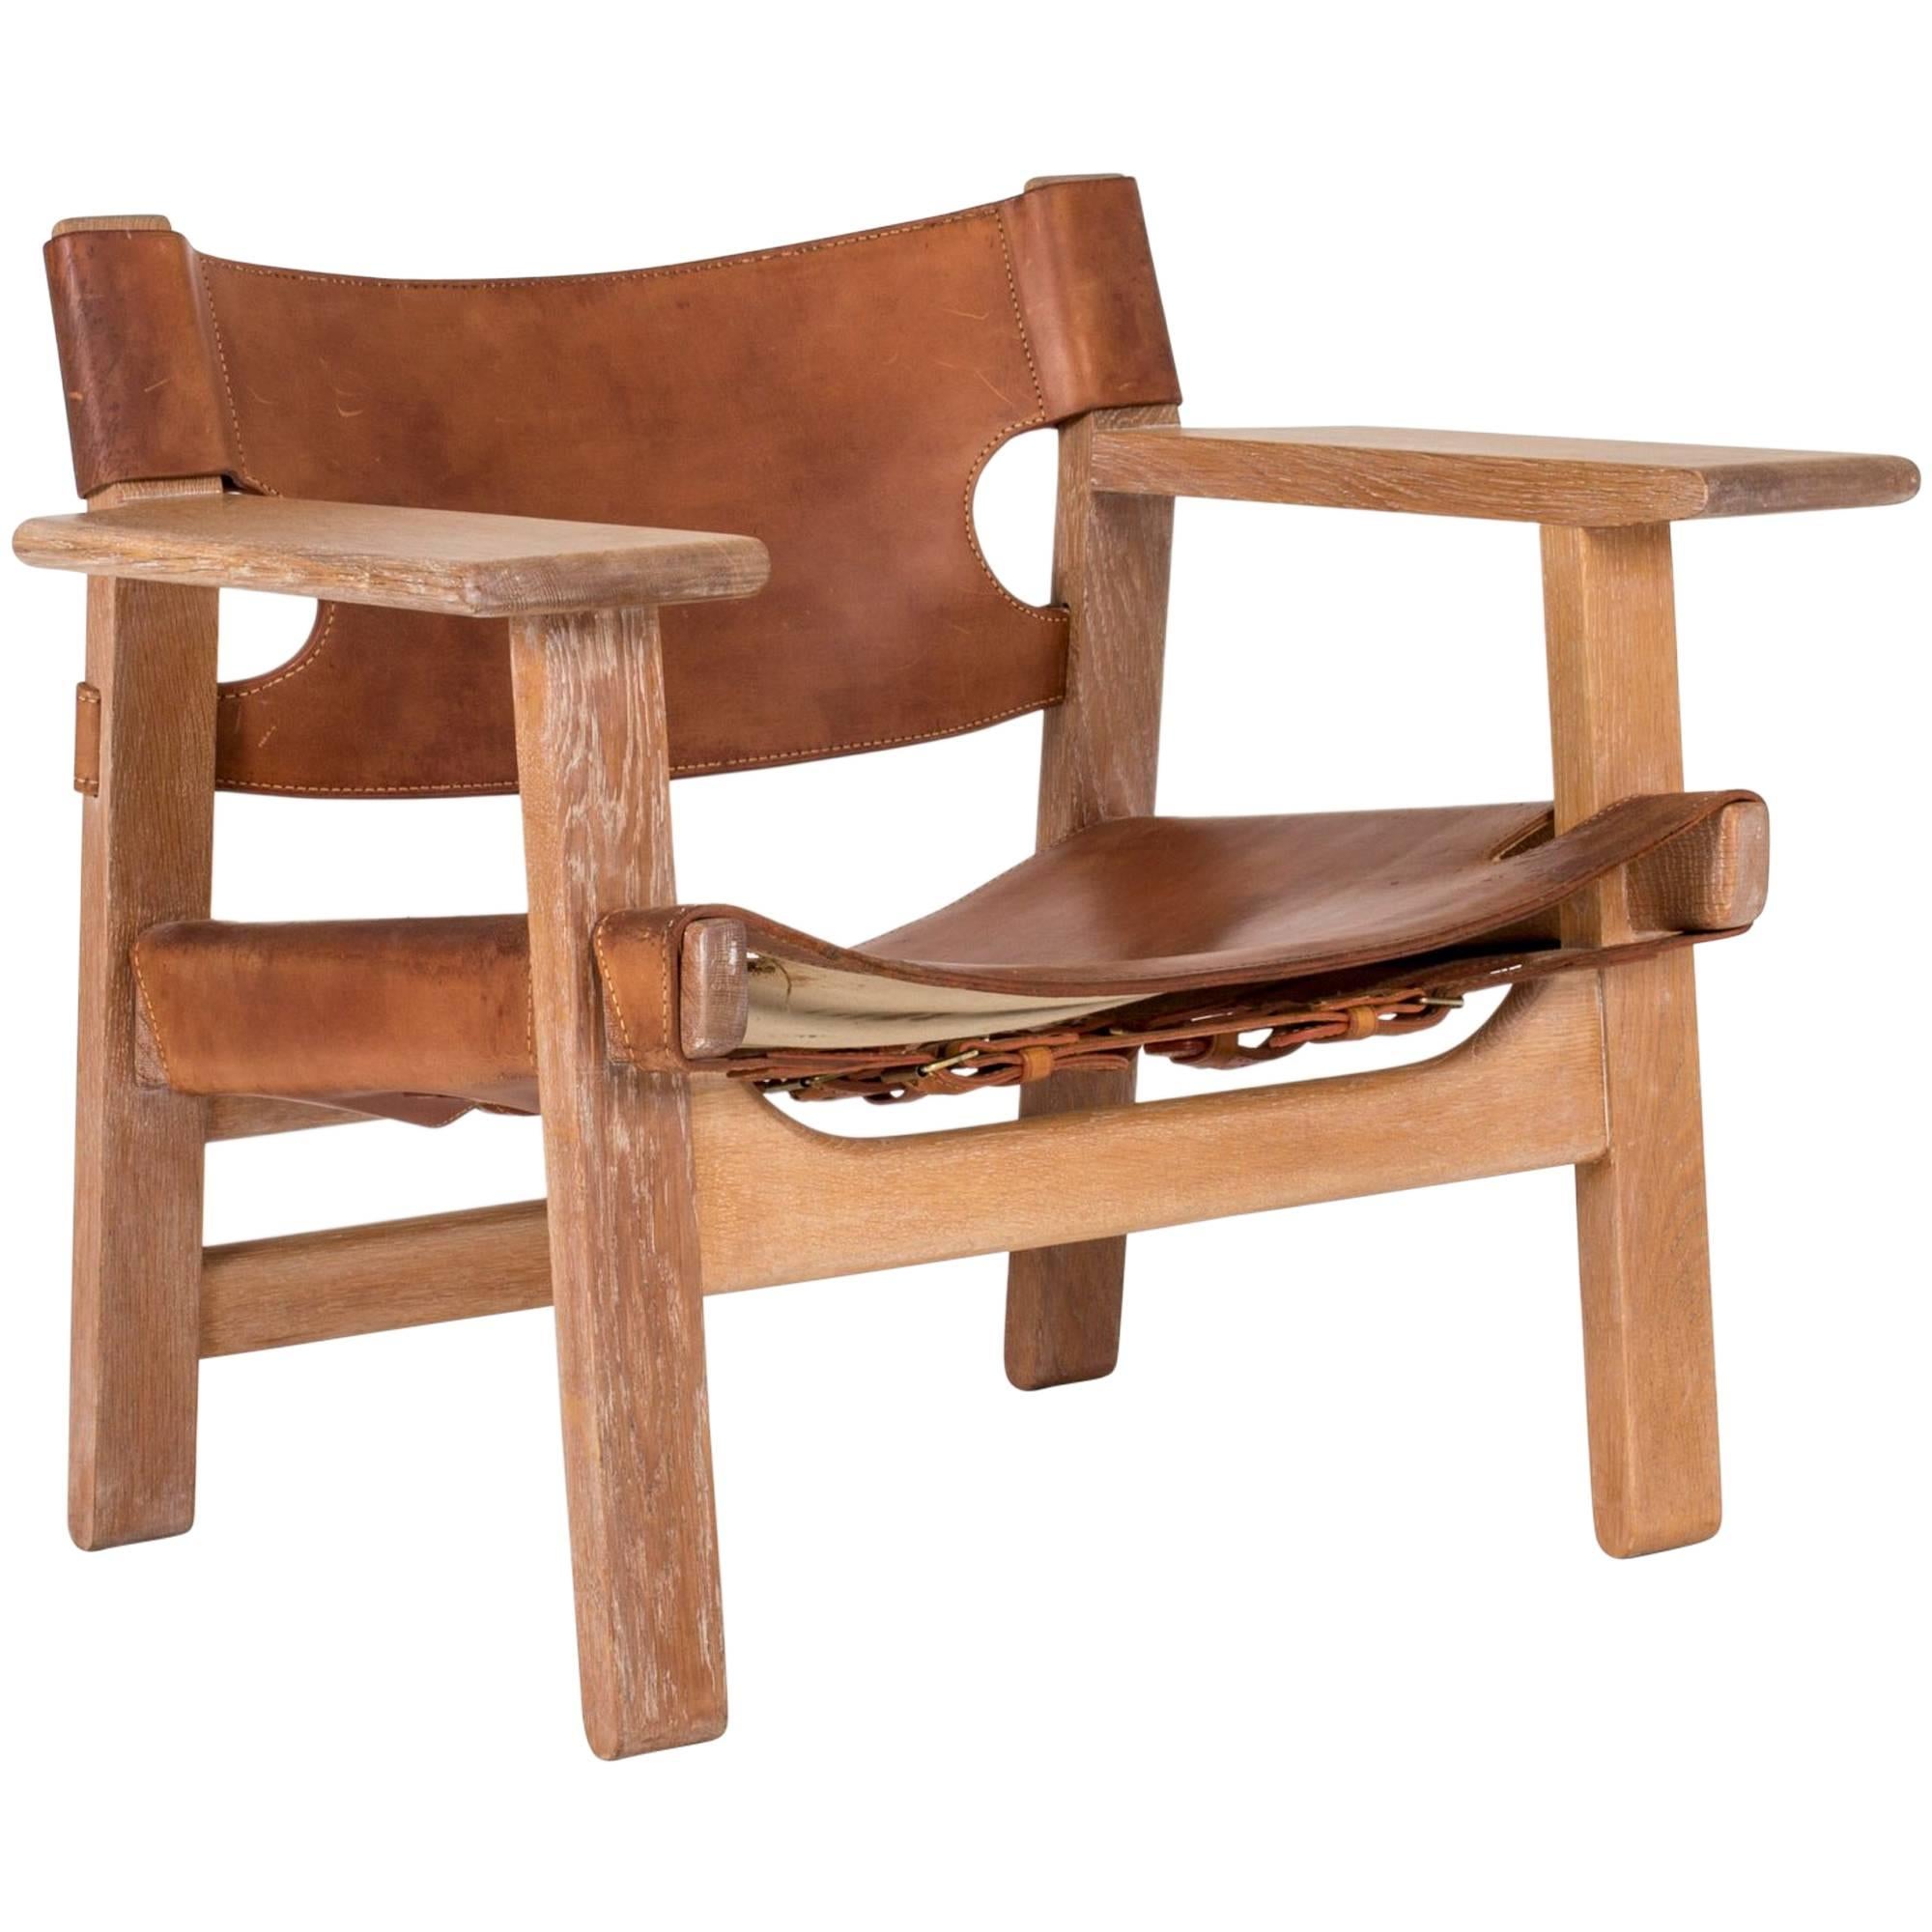 "Spanish Chair" by Børge Mogensen